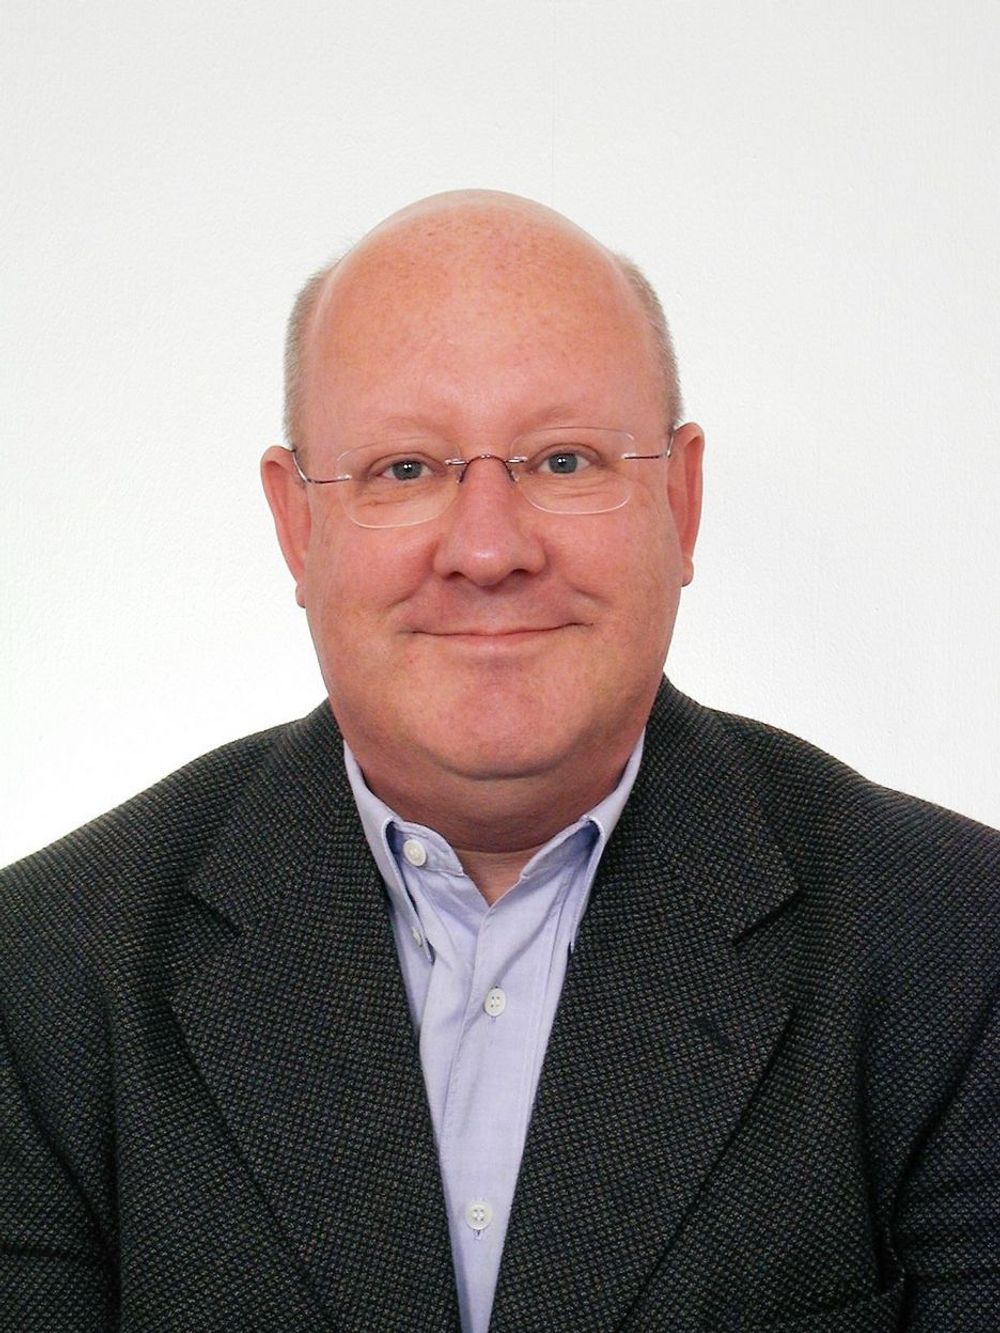 Bilanalytiker Matts Carlsson er direktør for Göteborg Management Institute.